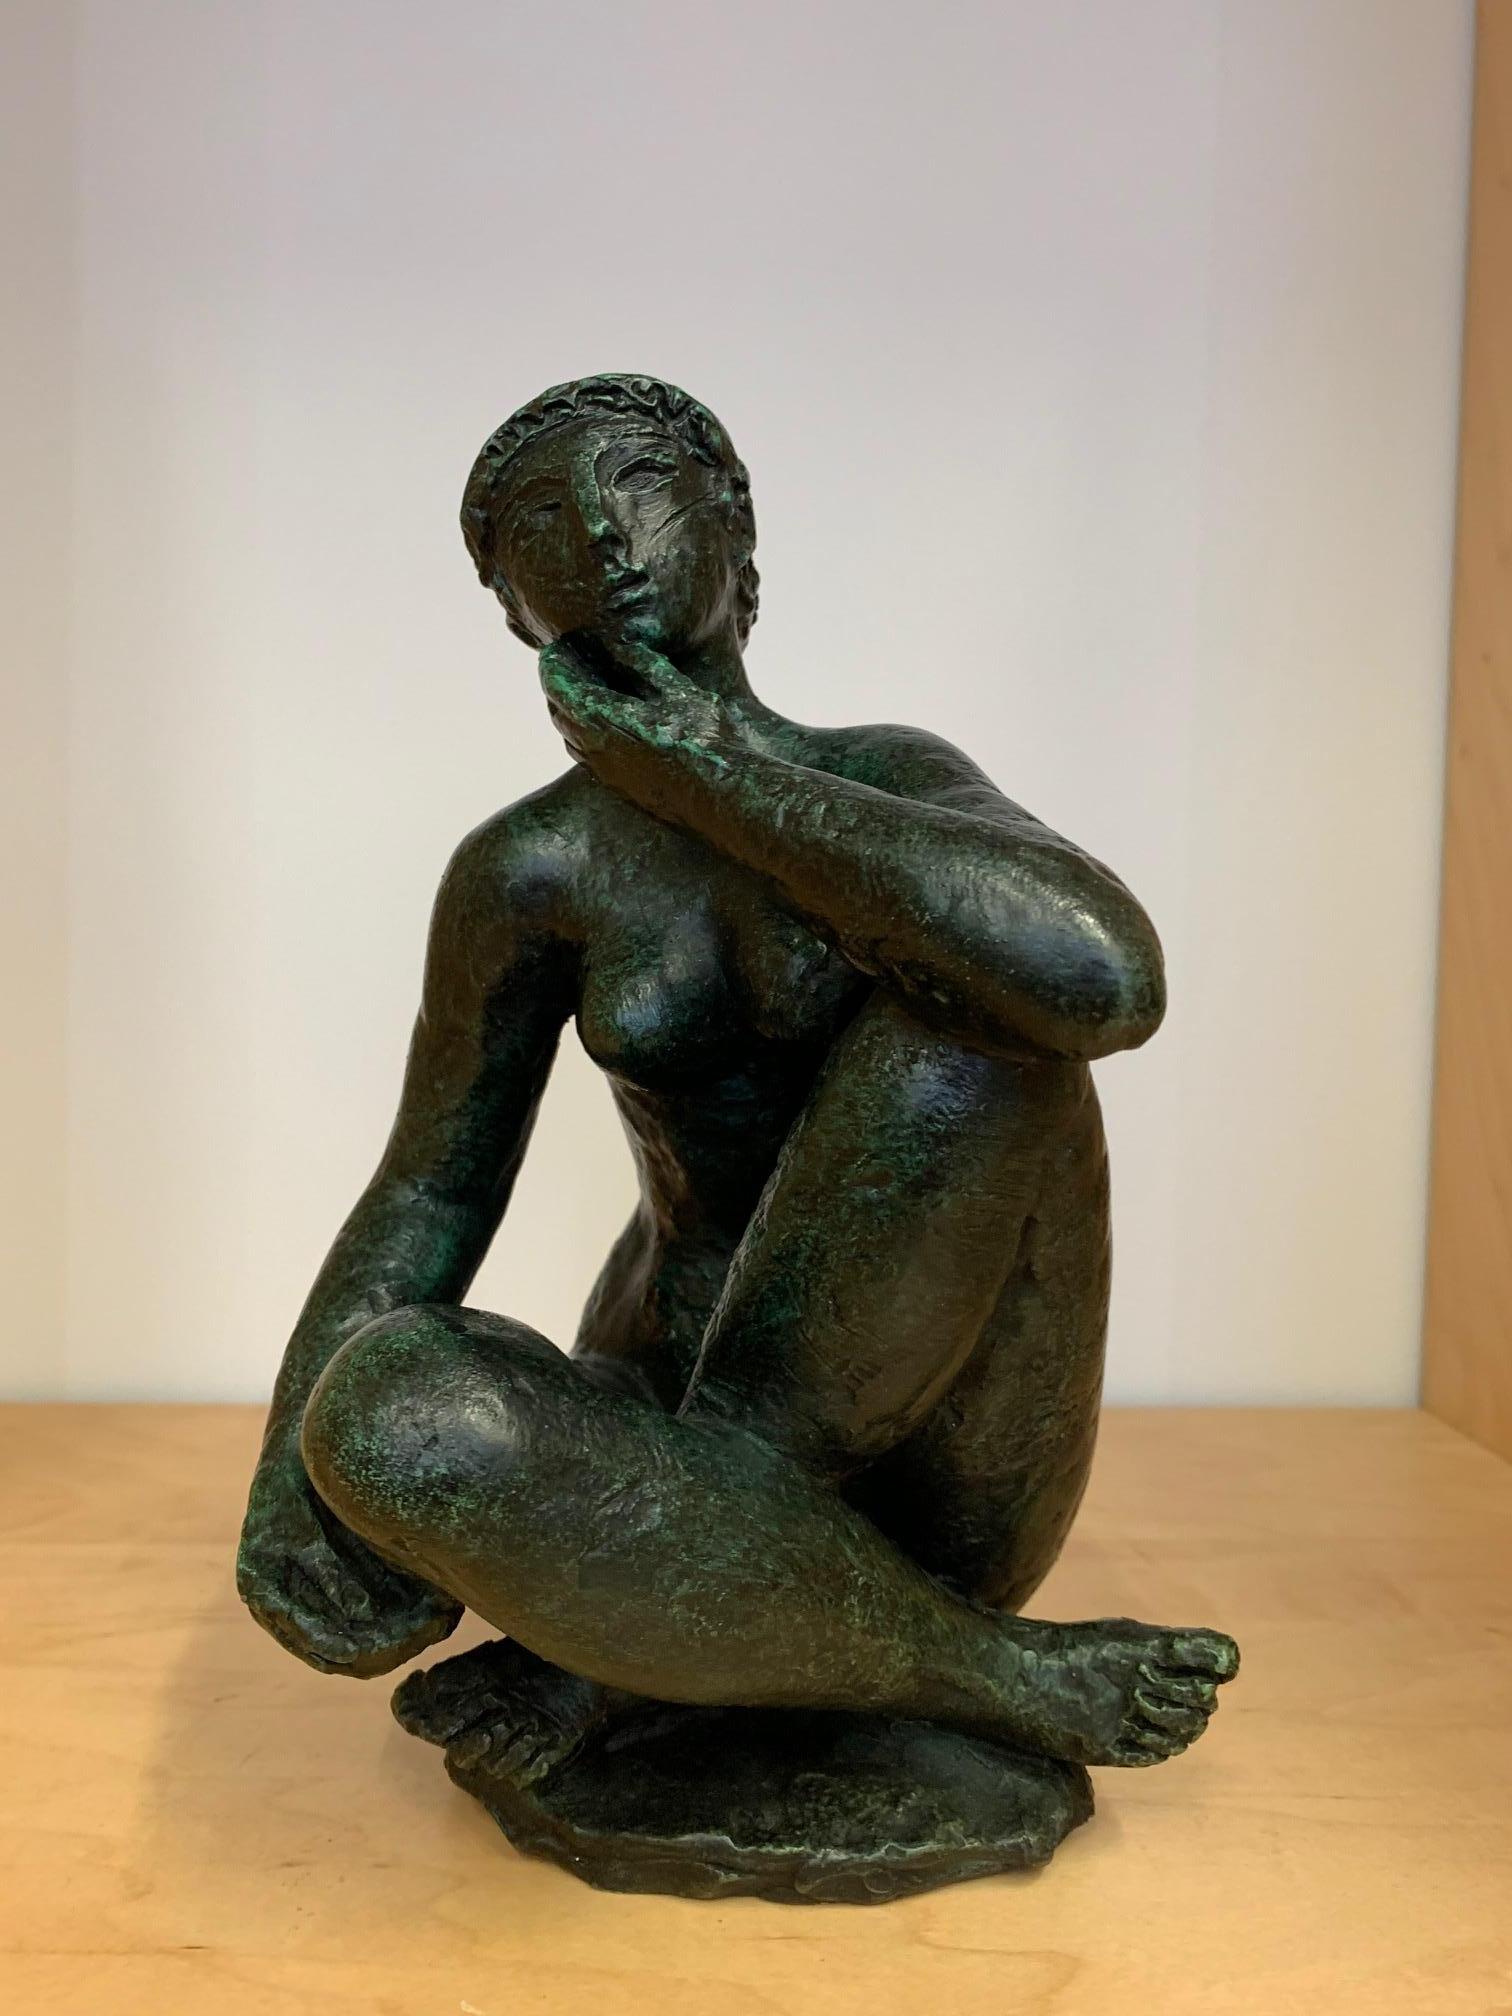 Cette petite sculpture figurative féminine en bronze d'Antoniucci Volti présente une belle patine verte sur le bronze.

Antoniucci Volti, de son vrai nom Voltigero, est un sculpteur, dessinateur et graveur français d'origine italienne, né en 1915 à